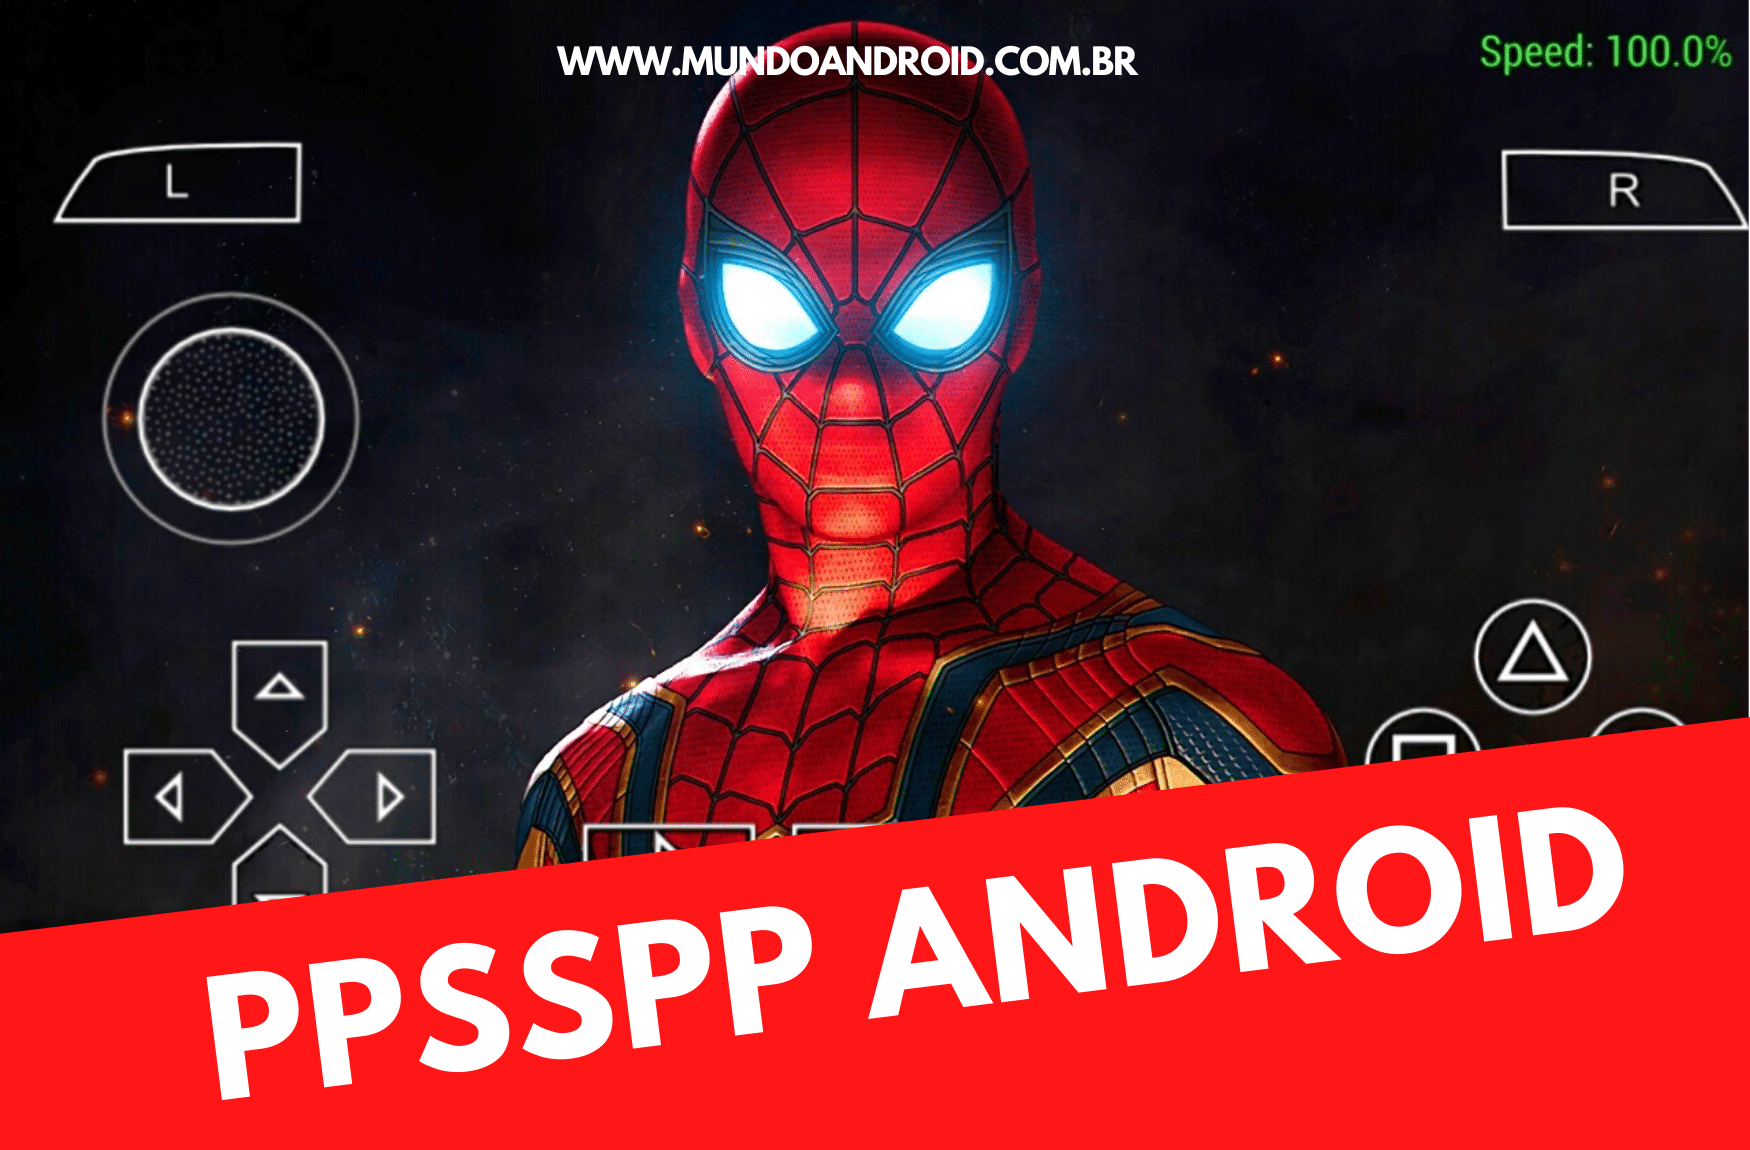 ppsspp spider man 3